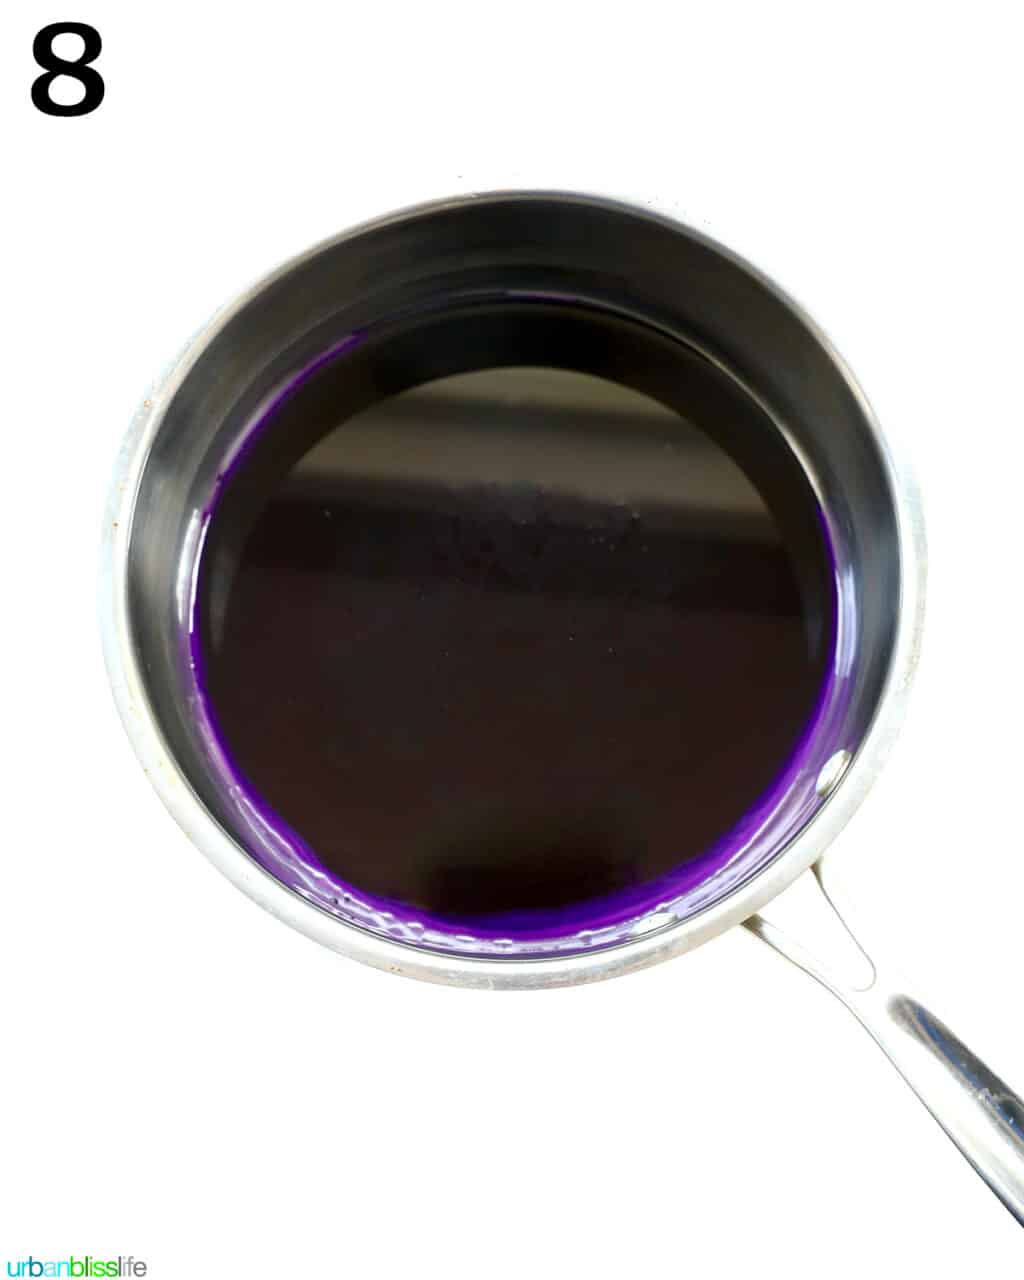 bright purple ube condensed milk in a saucepan.